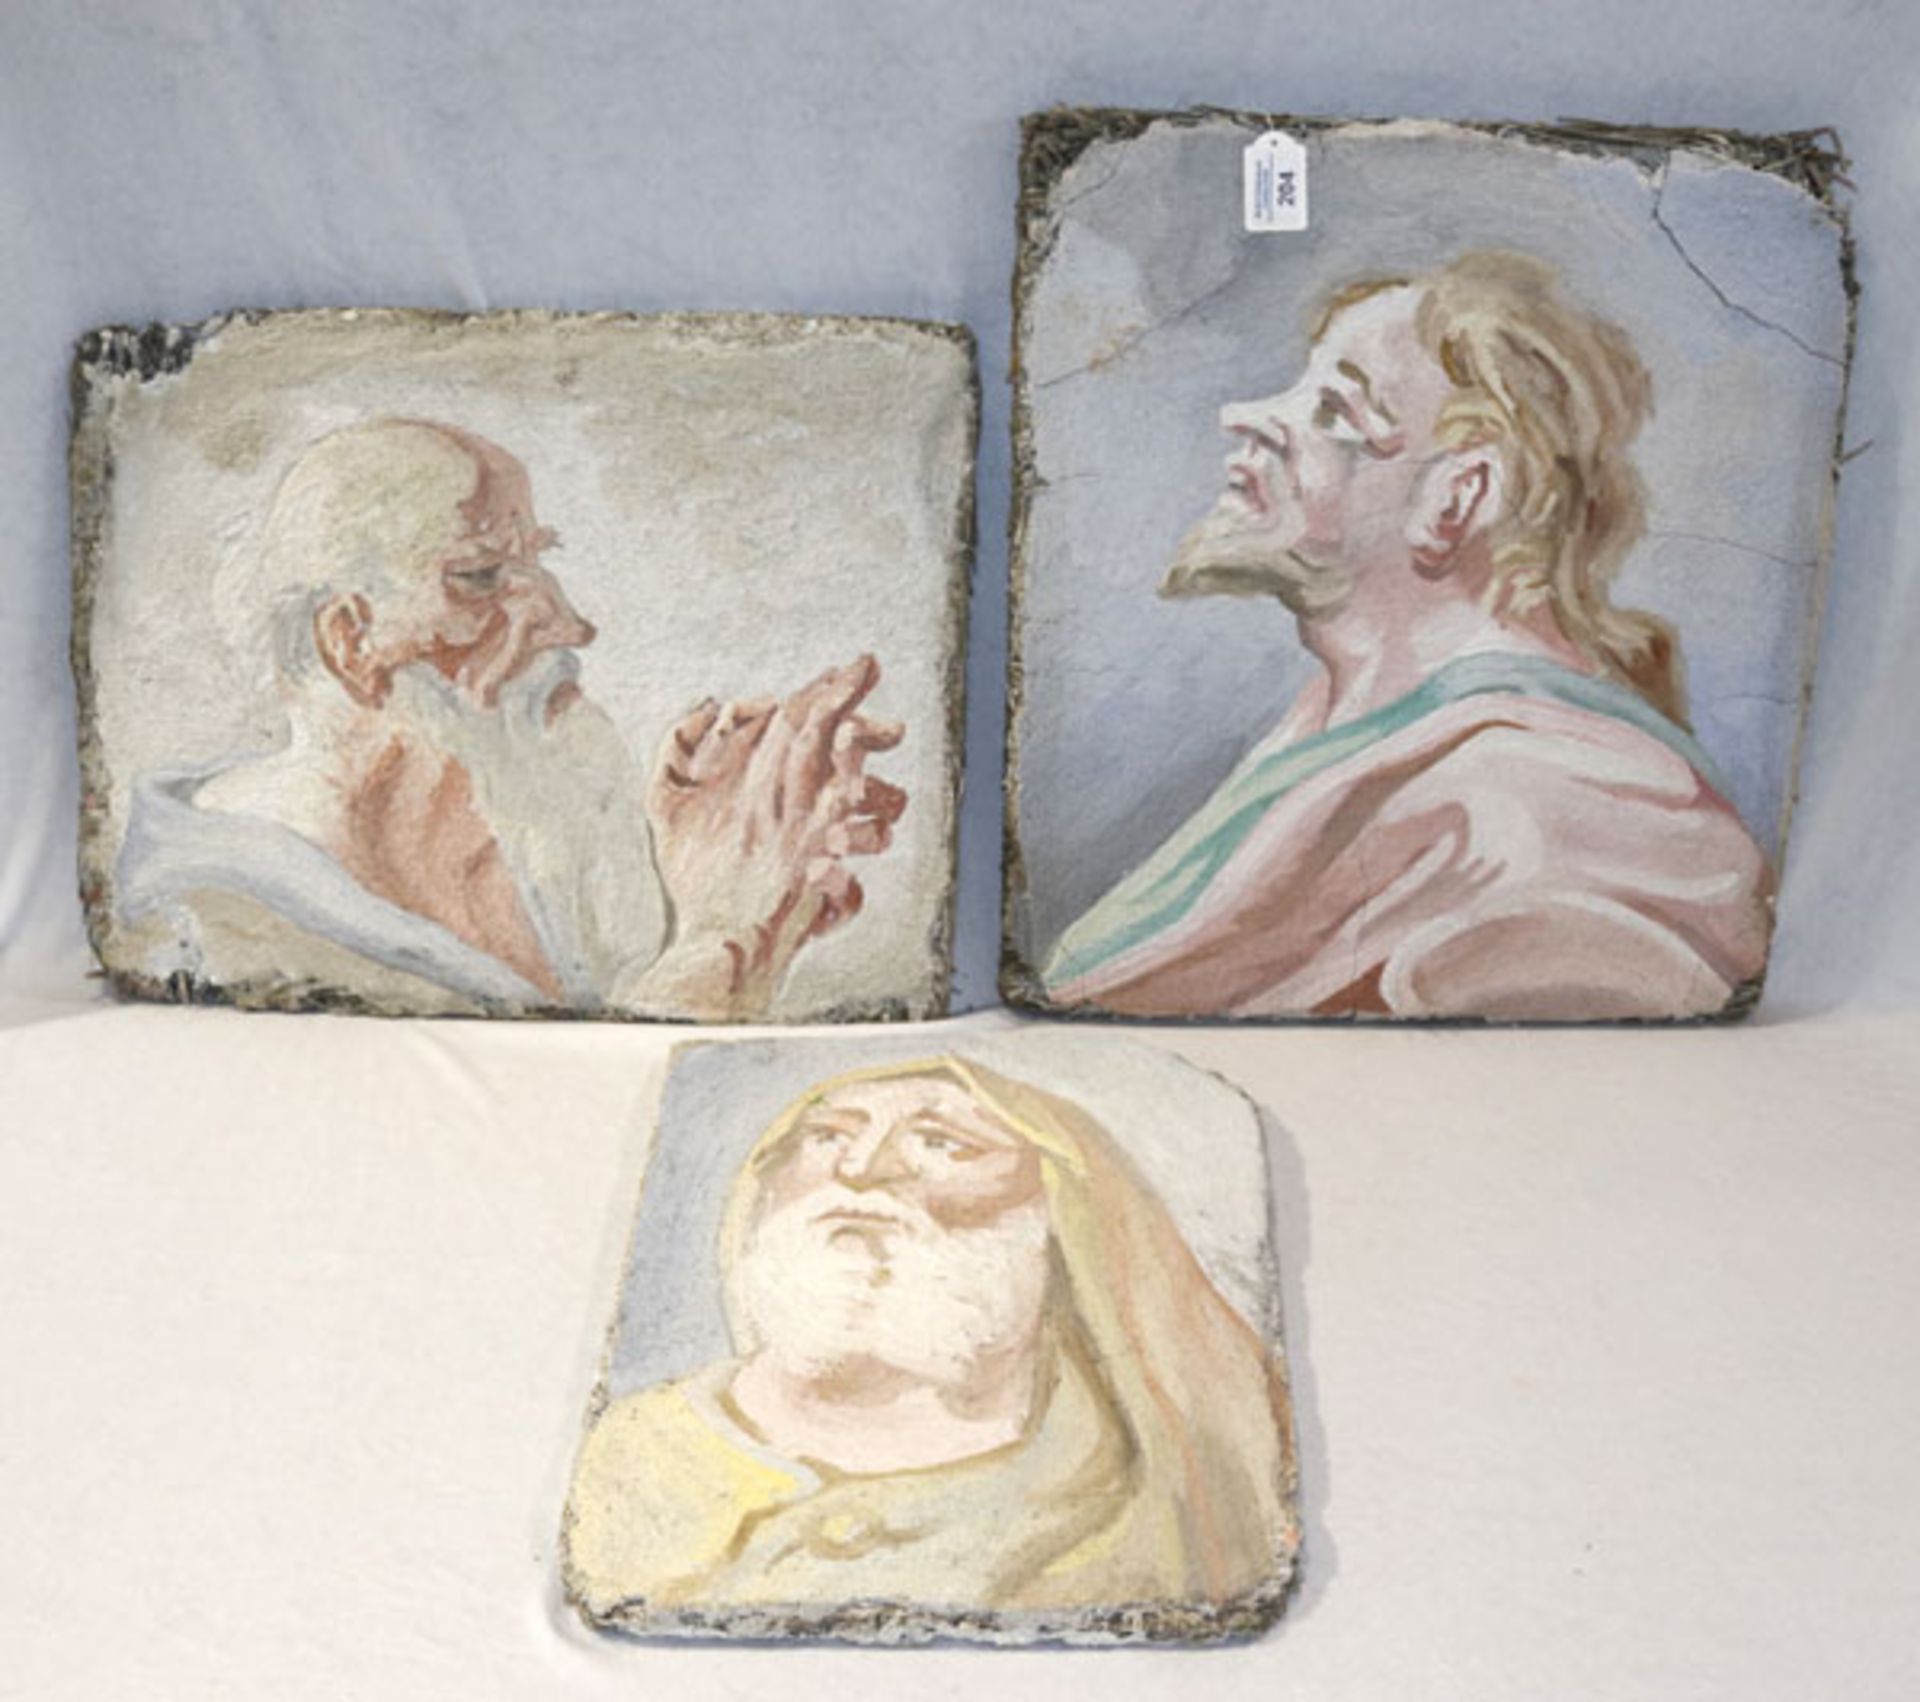 3 Freskenmalereien in der Art von Heinrich Bickel 'Portraits', teils beschädigt, 40/52 cm x 31/50